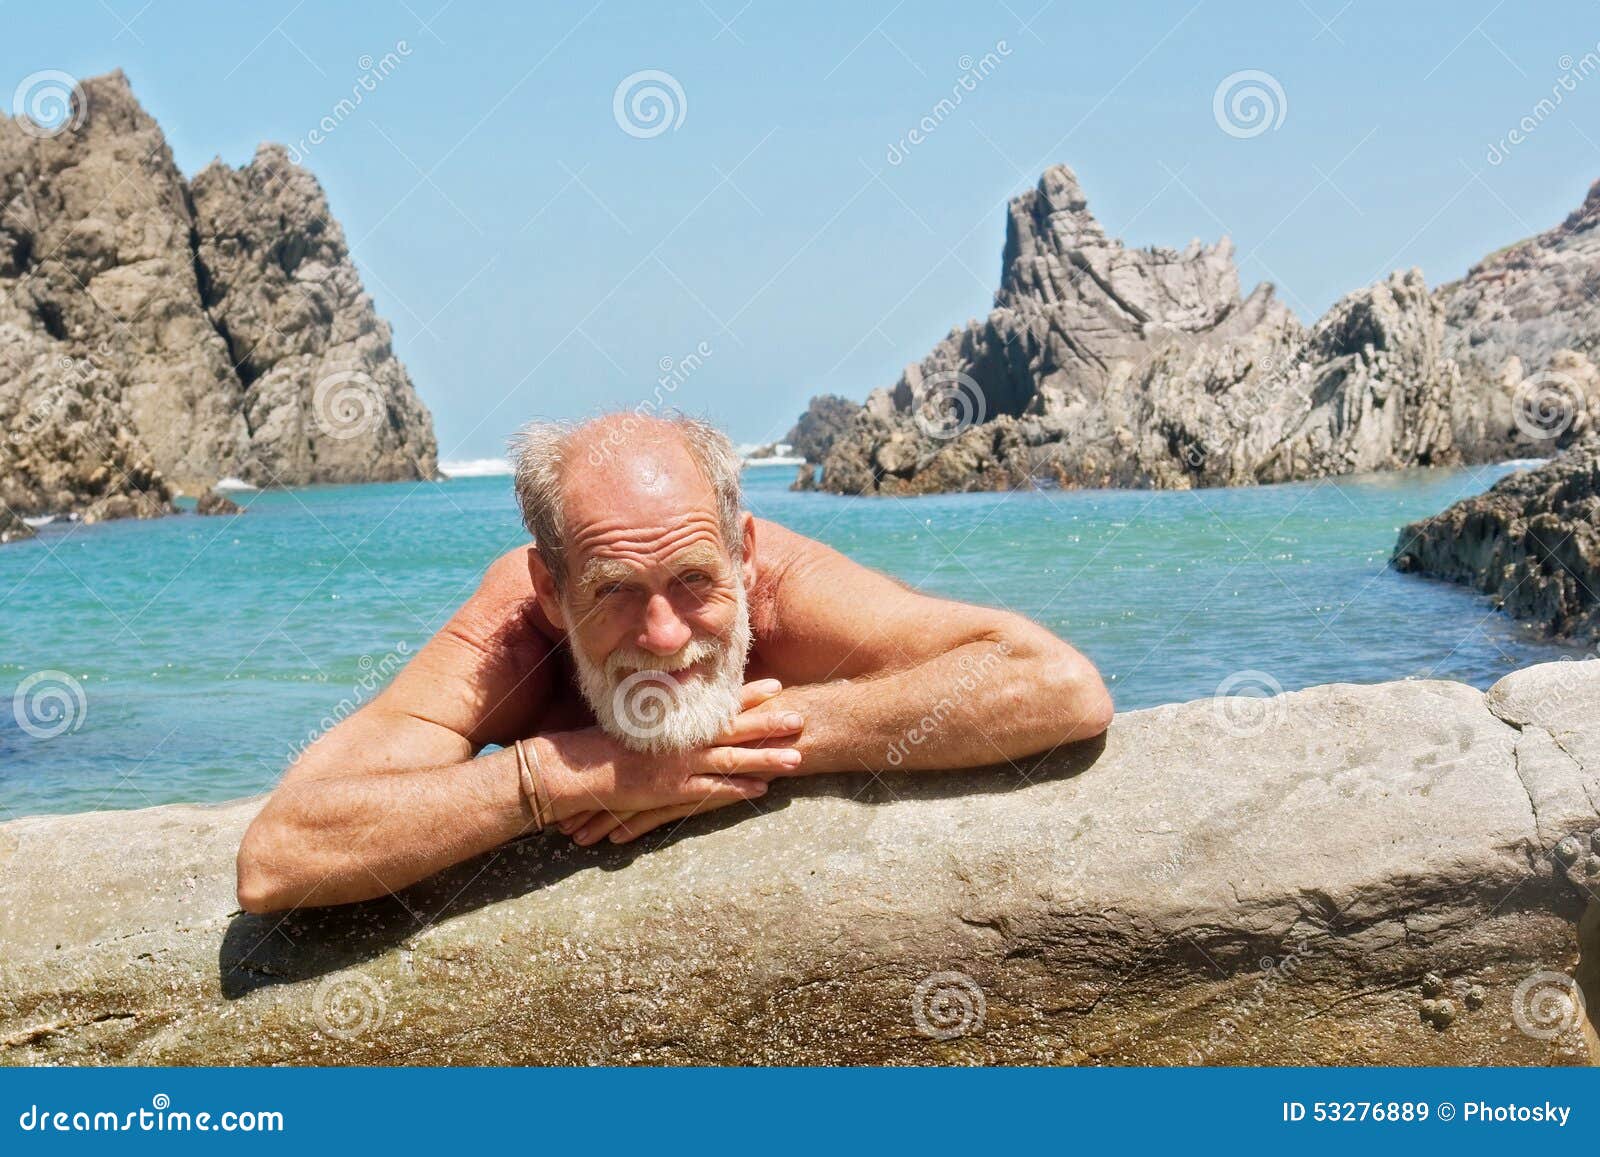 Old men on beach